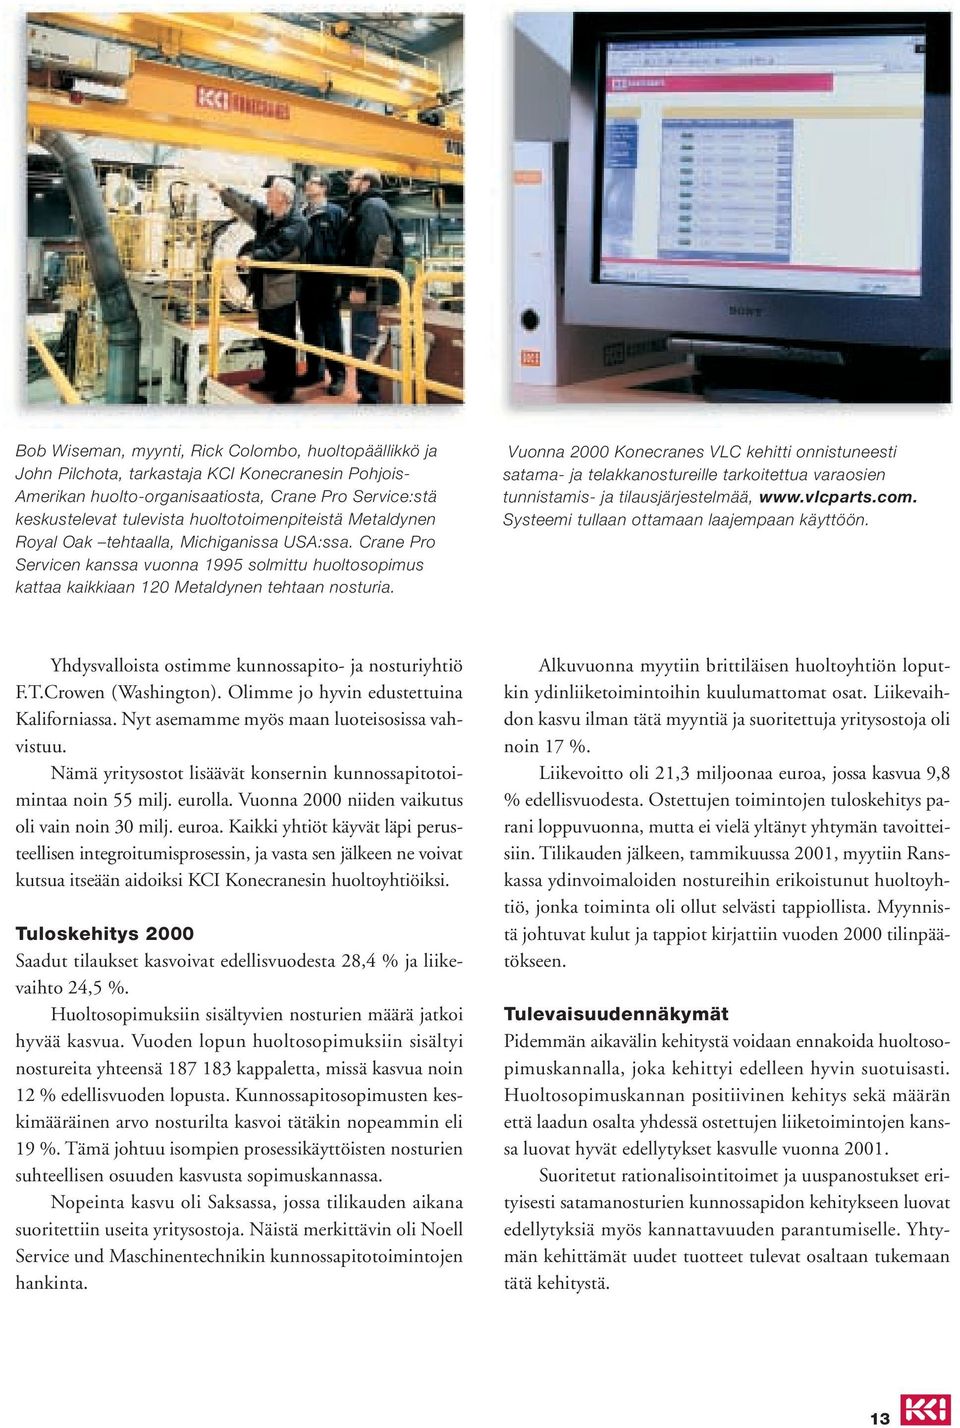 Vuonna 2000 Konecranes VLC kehitti onnistuneesti satama- ja telakkanostureille tarkoitettua varaosien tunnistamis- ja tilausjärjestelmää, www.vlcparts.com.